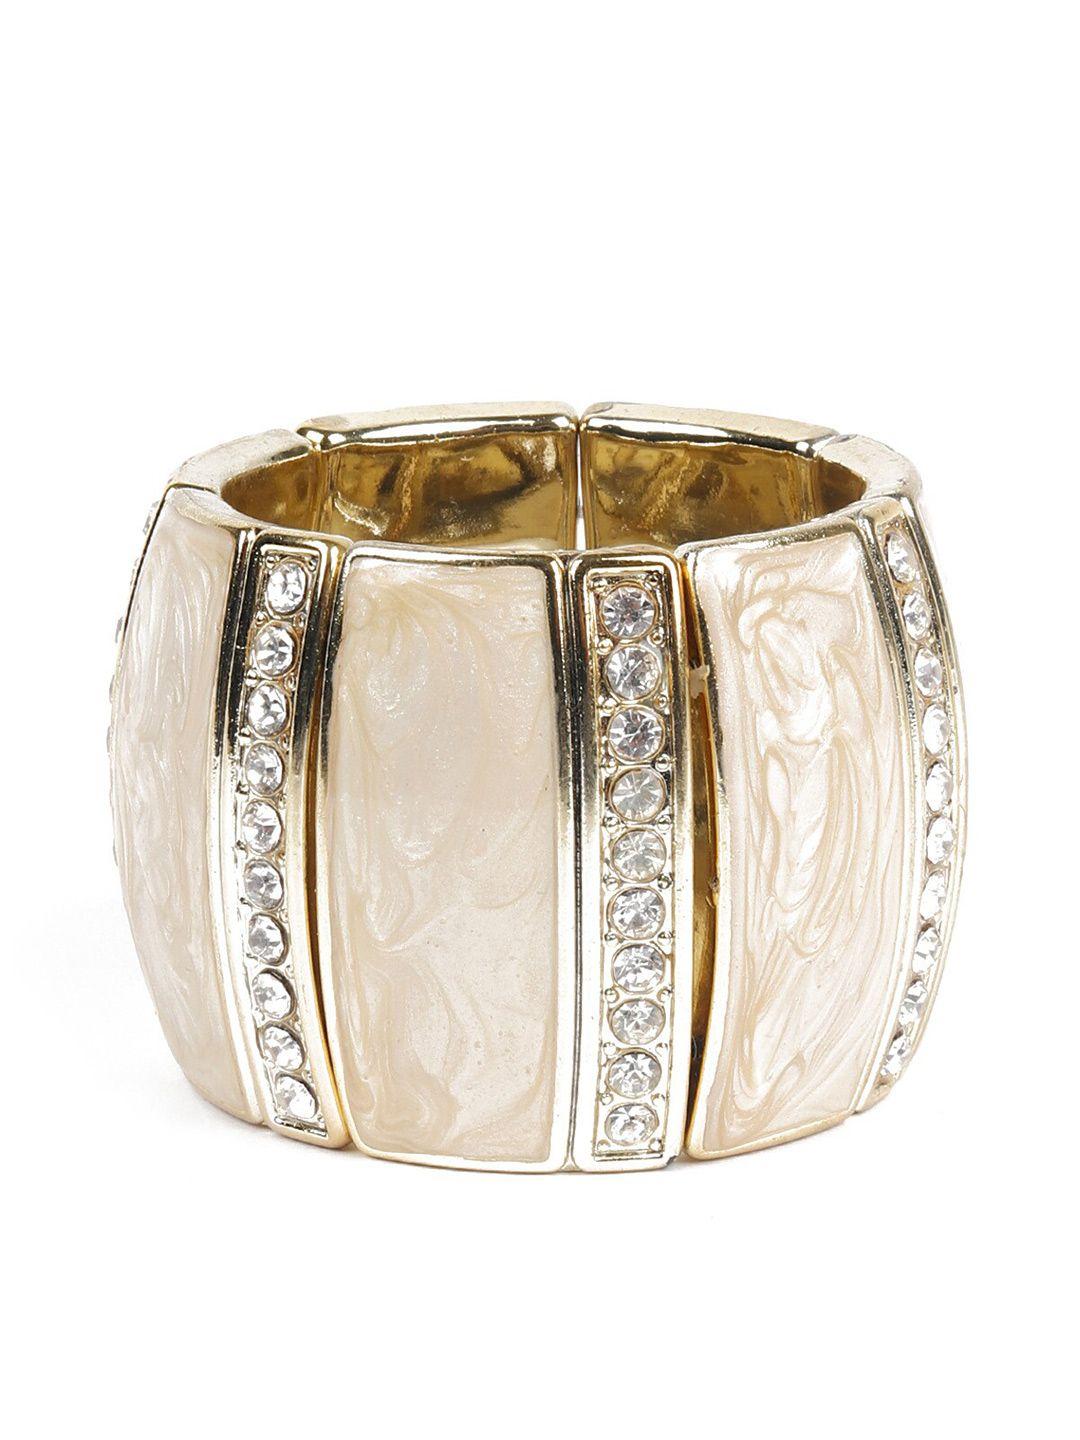 odette women gold-plated & cream embellished metal cuff bracelet